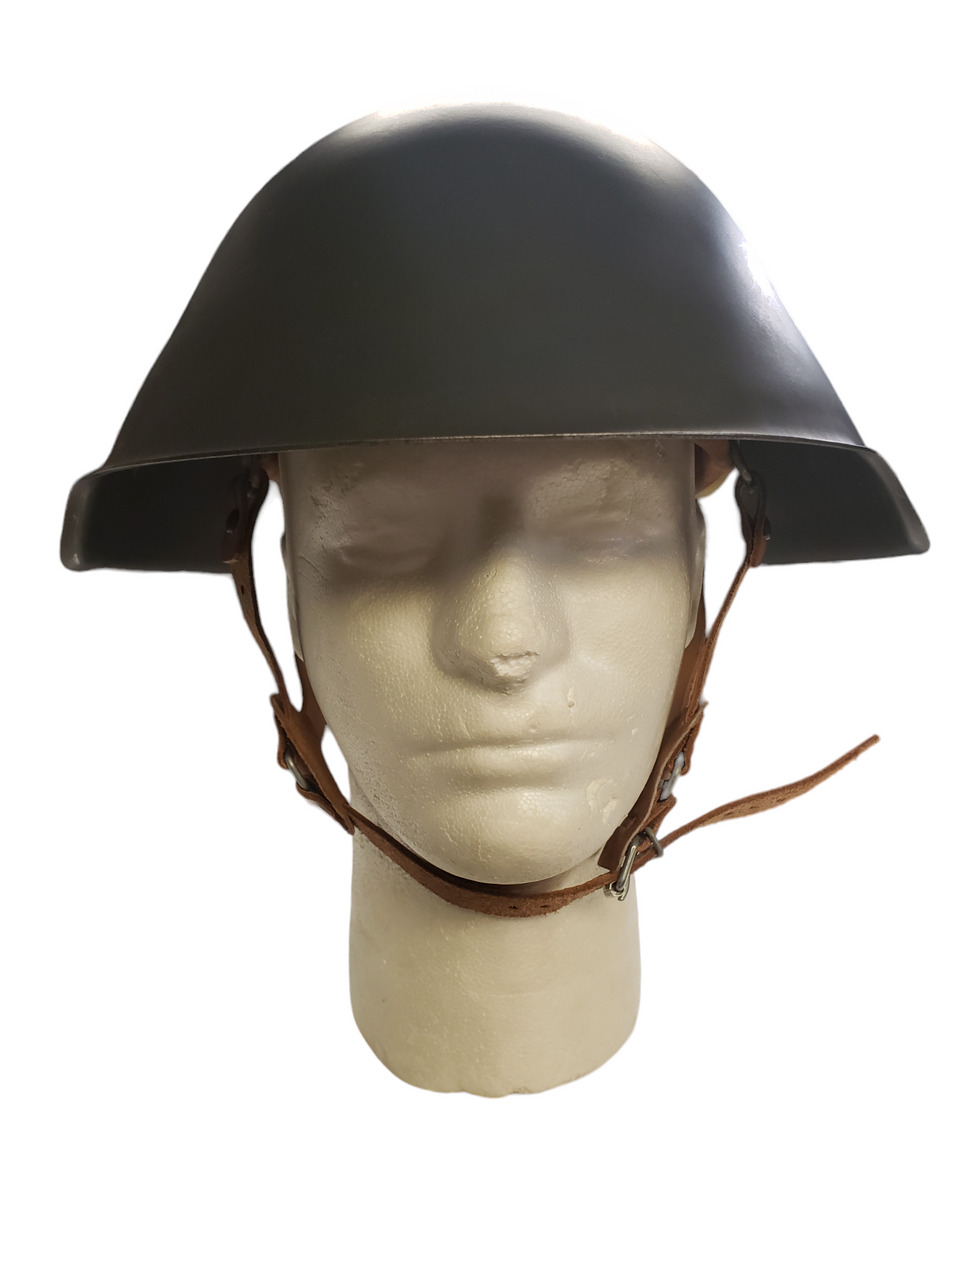 East German M56 helmet